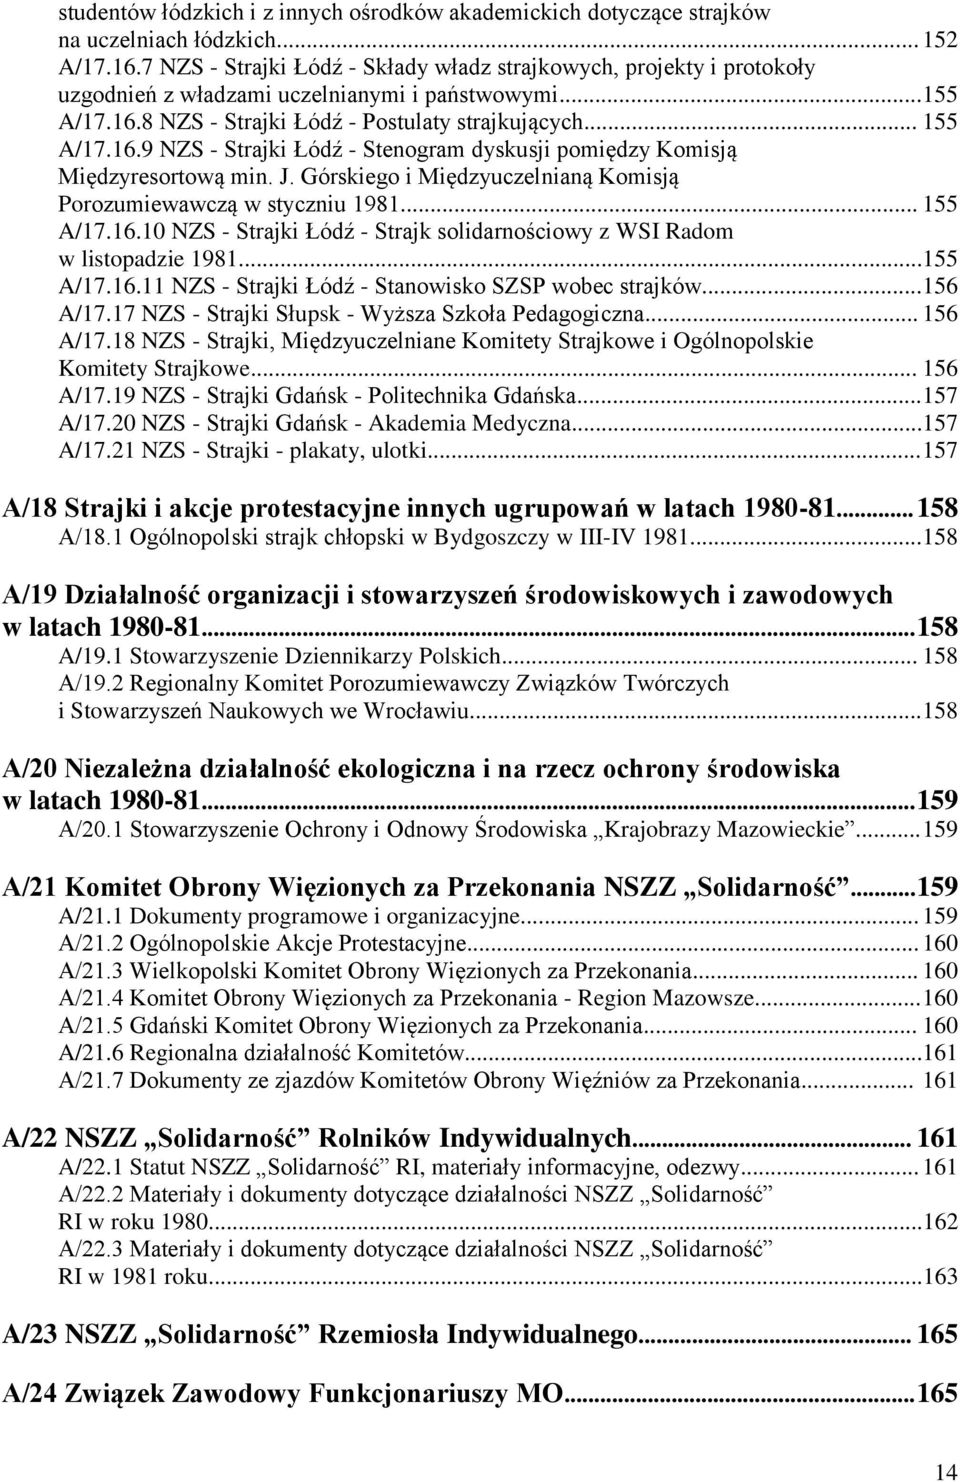 8 NZS - Strajki Łódź - Postulaty strajkujących... 155 A/17.16.9 NZS - Strajki Łódź - Stenogram dyskusji pomiędzy Komisją Międzyresortową min. J.